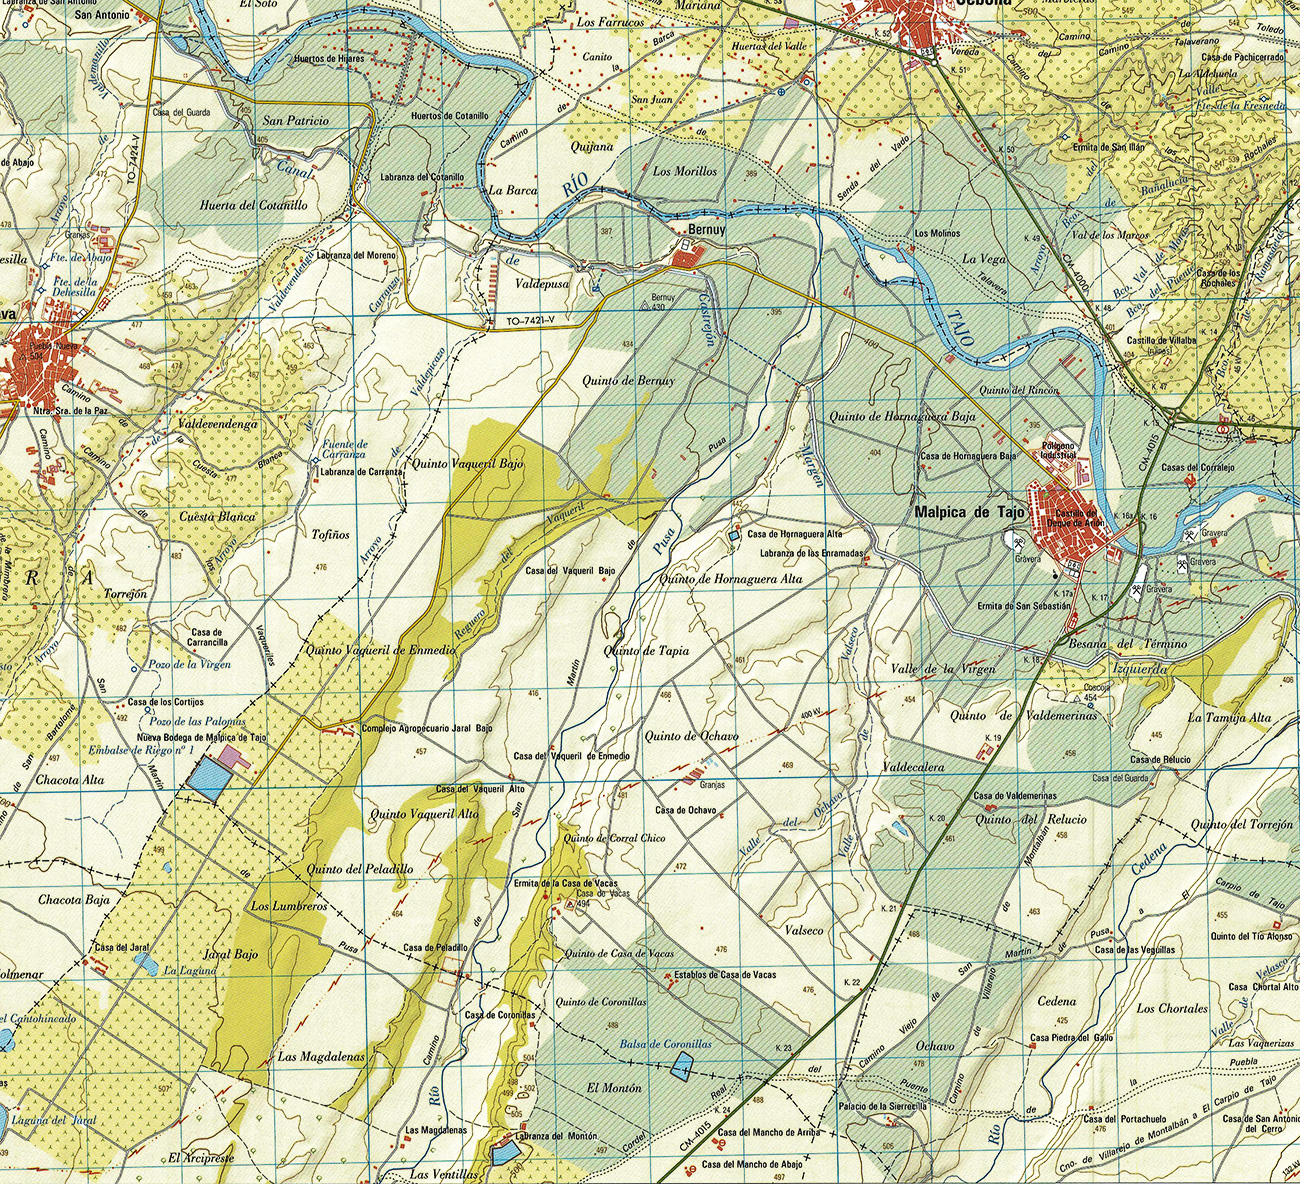 Recorte del mapa de la comarca de Talavera de la Reina elaborado por la Dirección general del Instituto Geográfico y Catastral 